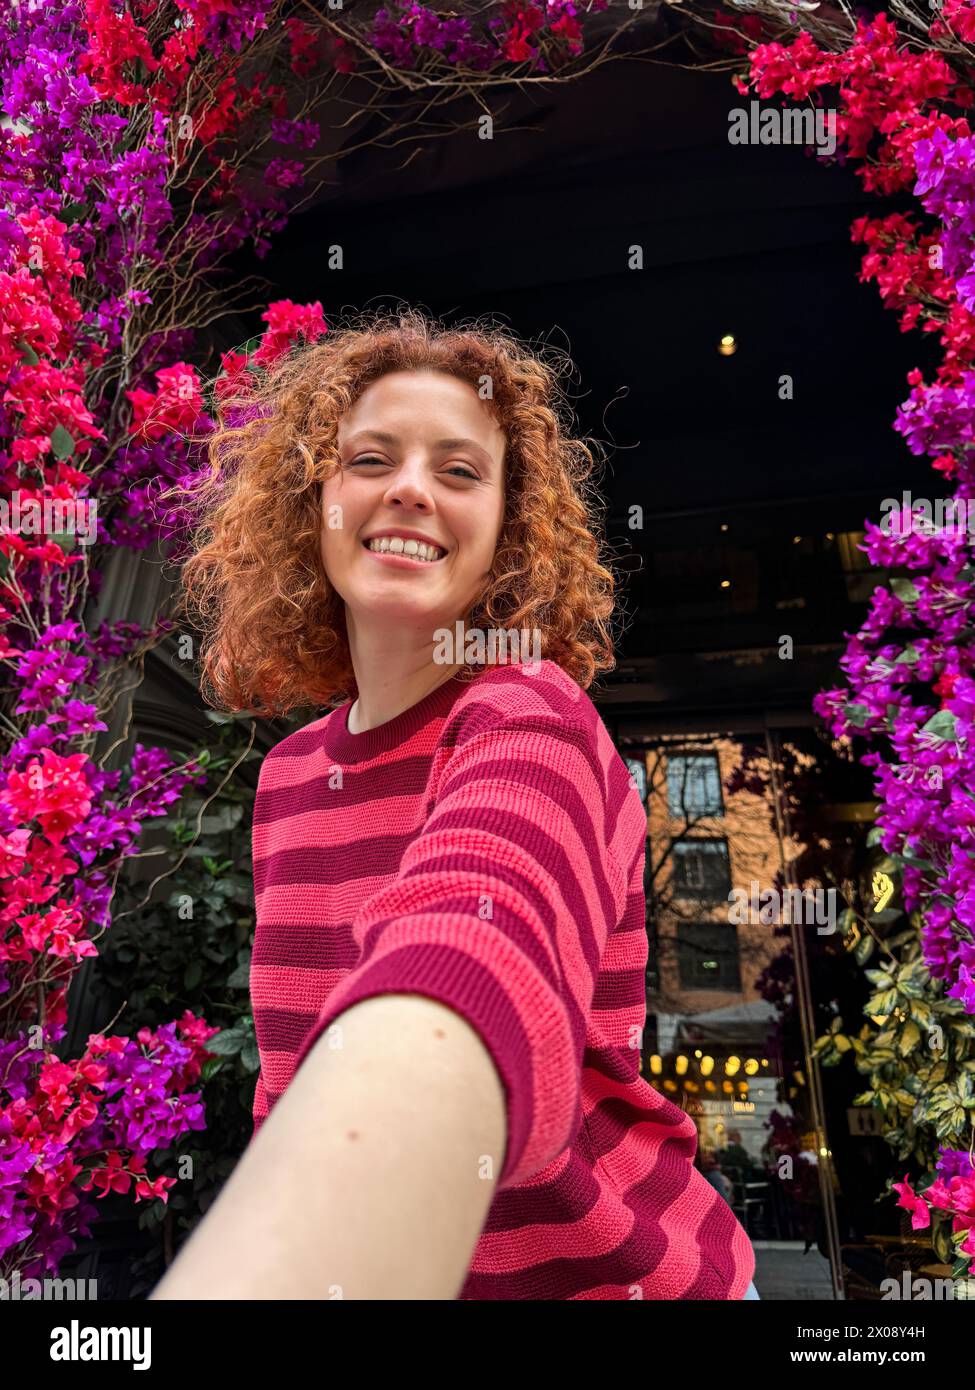 Allegra giovane donna rossa con capelli ricci sorridenti sotto un vivace arco floreale in un ambiente urbano Foto Stock